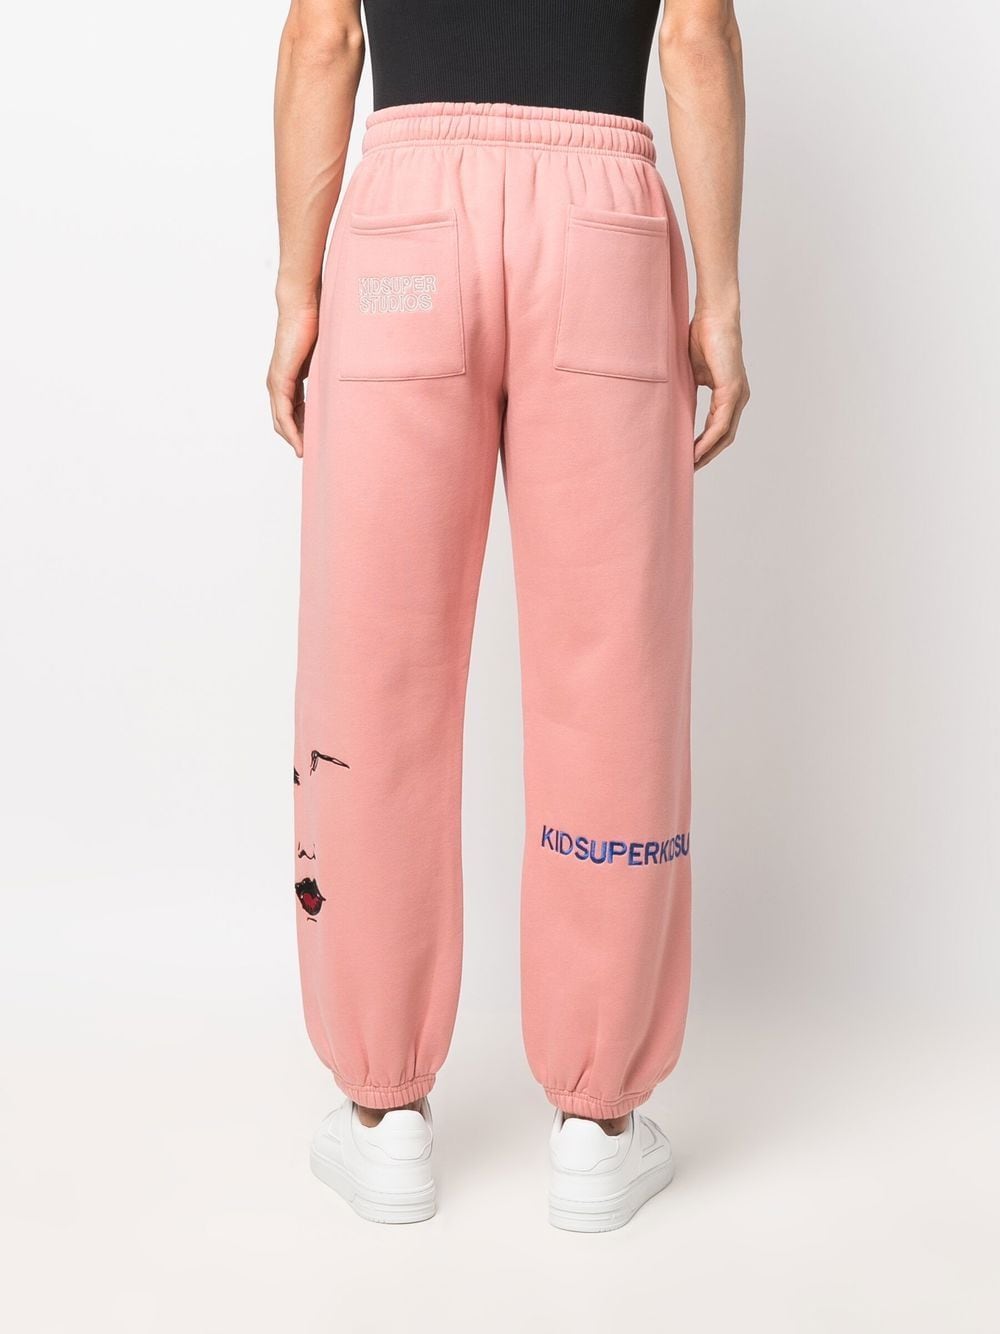 KIDSUPER Embroidered two-pocket track pants Pink - MAISONDEFASHION.COM